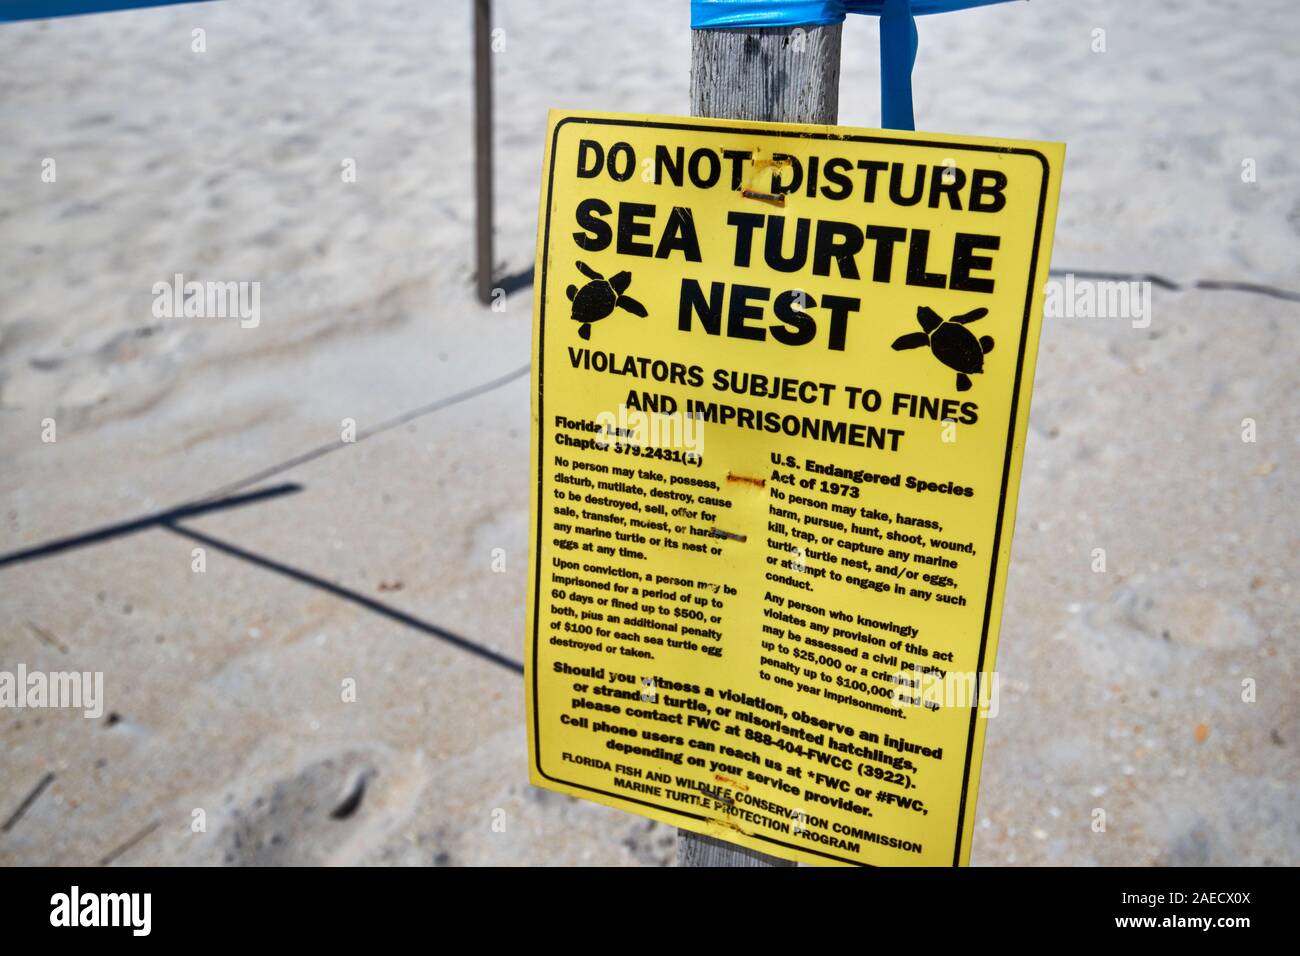 Des nids de tortues de mer ne pas déranger signe sur la plage à marineland florida usa Banque D'Images